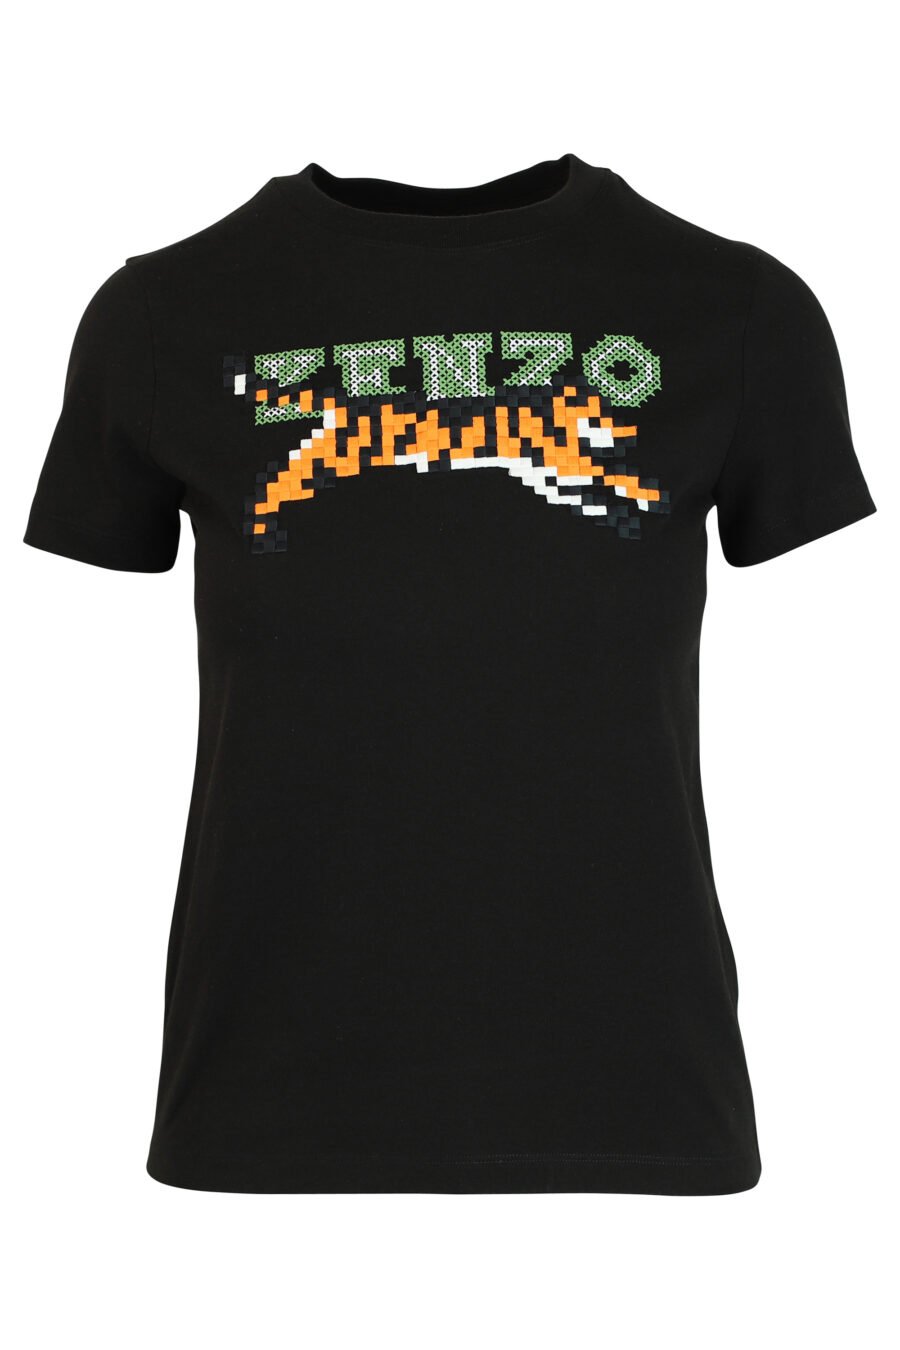 T-shirt preta com maxilogo de tigre - 3612230460195